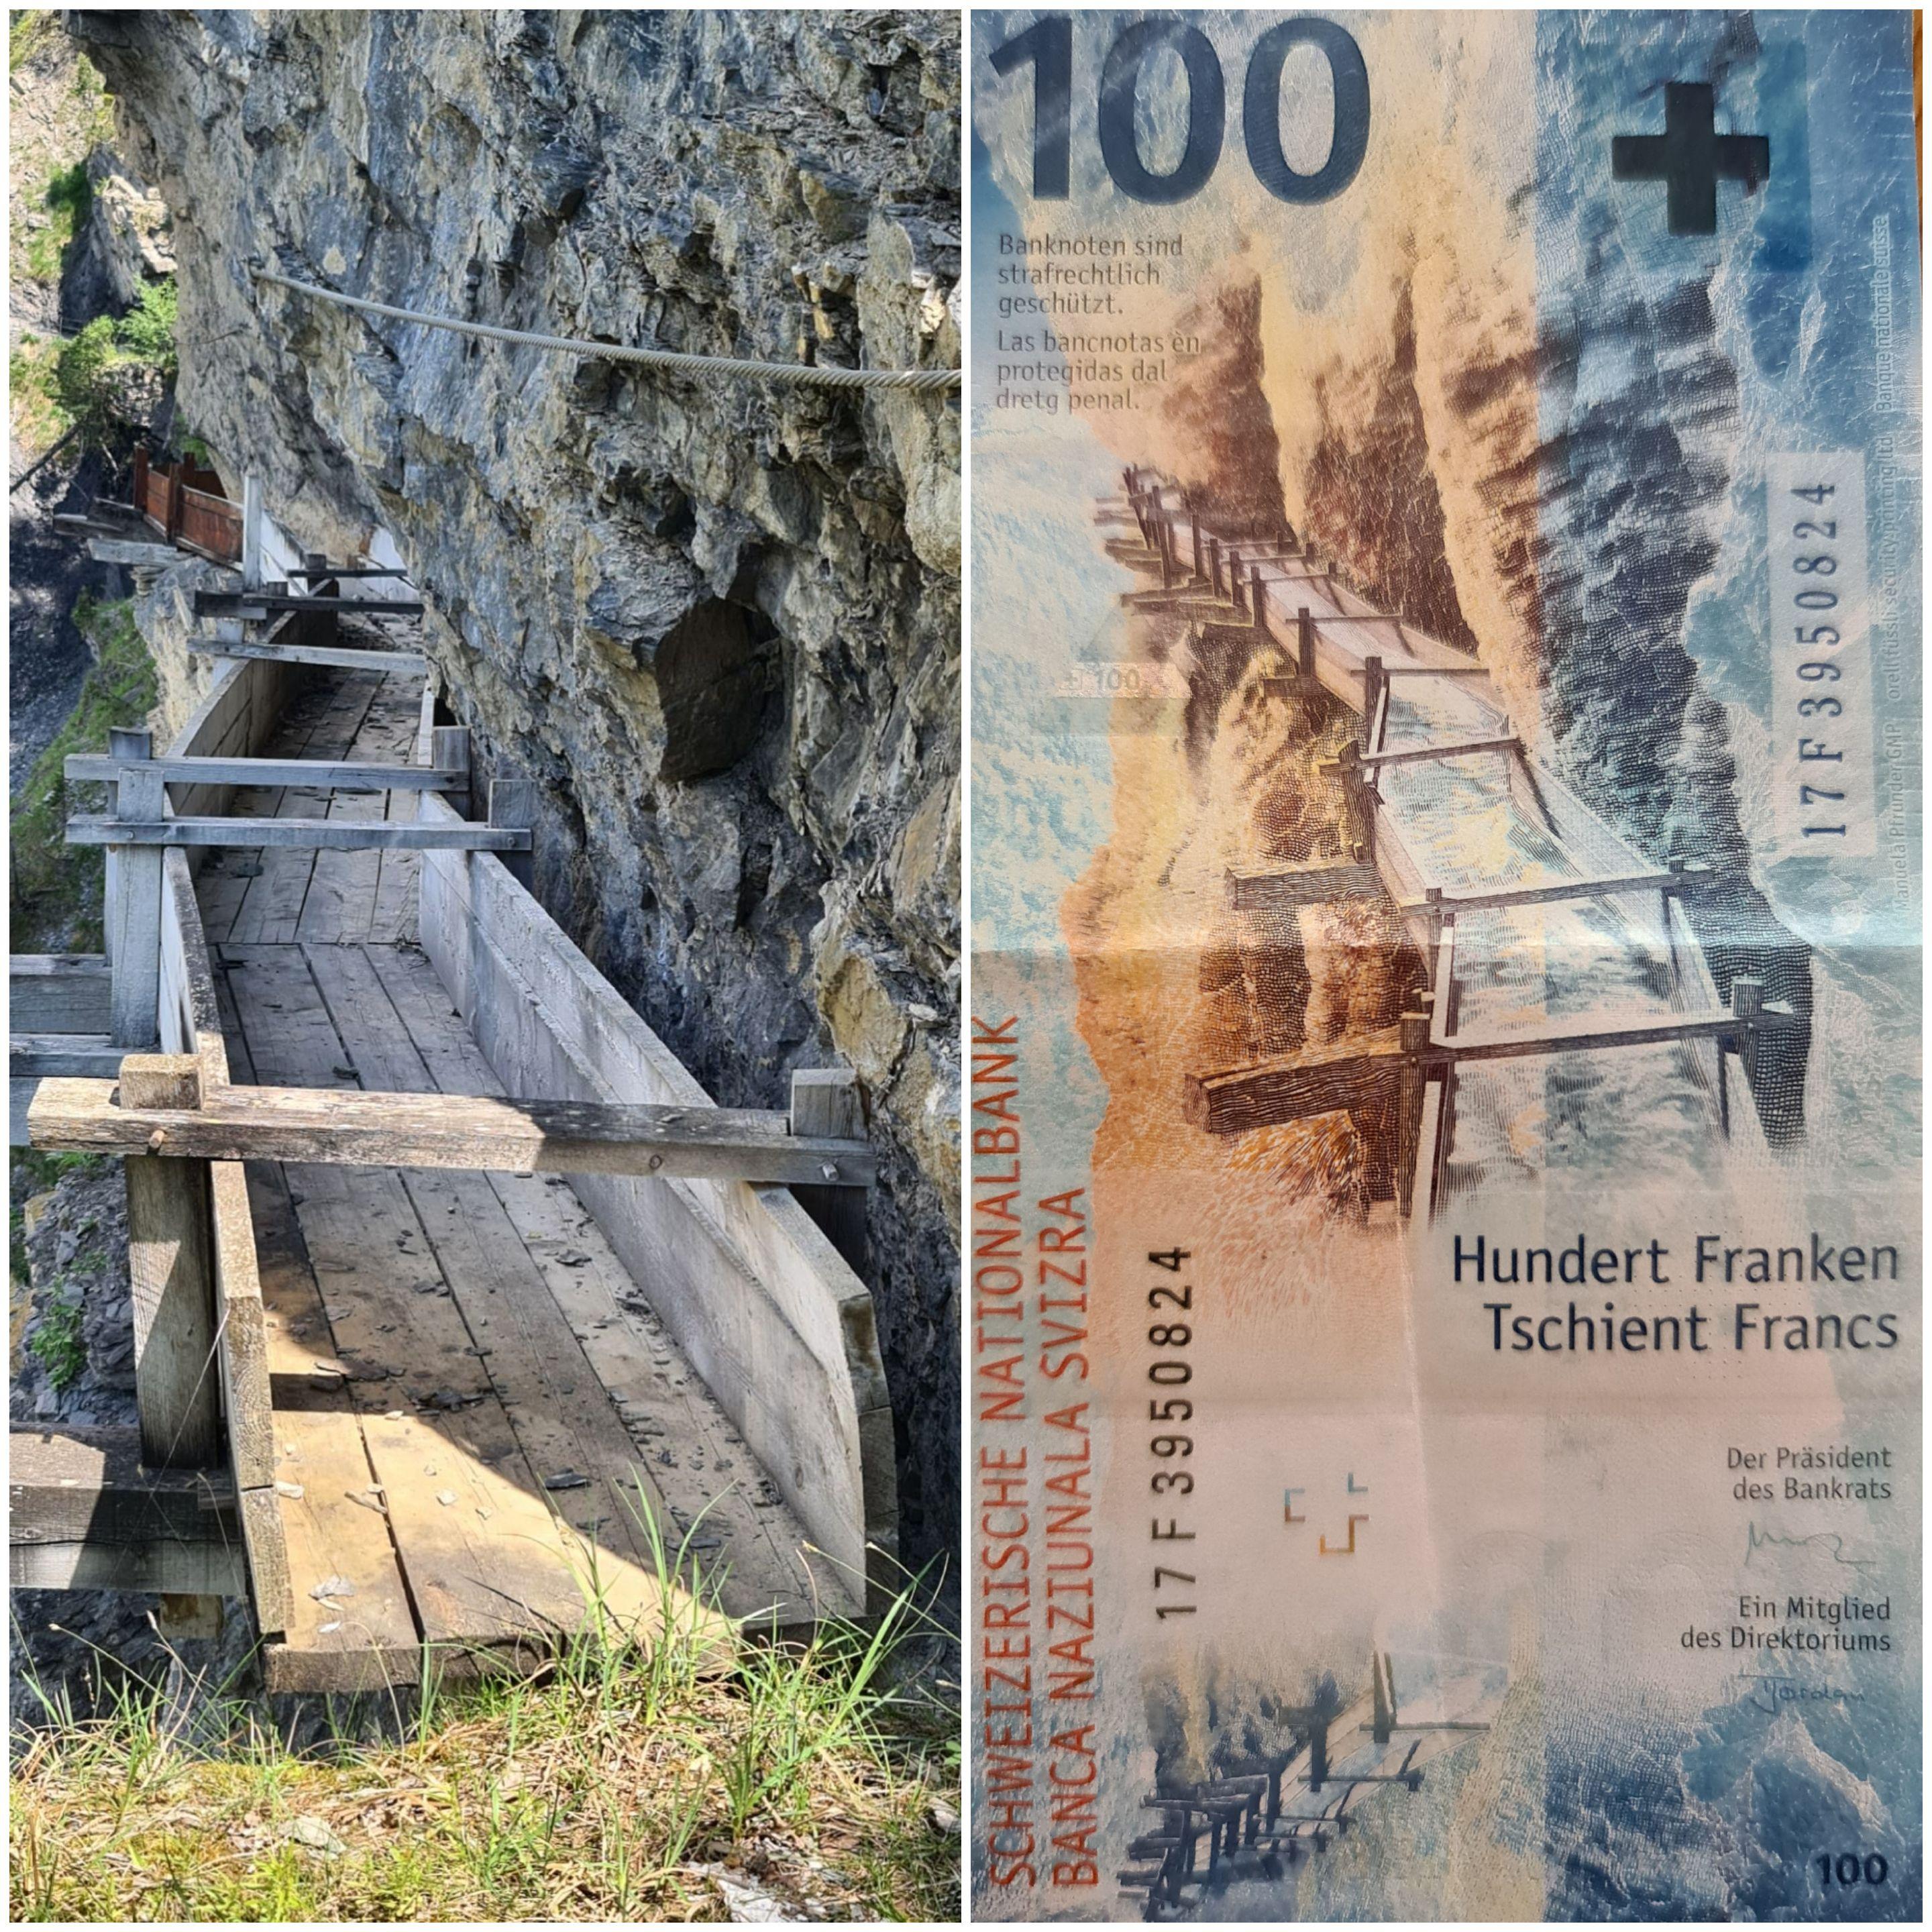 Le passage de Torrent-Croix sur le bisse d'Ayent illustre le billet de 100 francs de la Confédération depuis 2019 [RTS - Katia Bitsch]